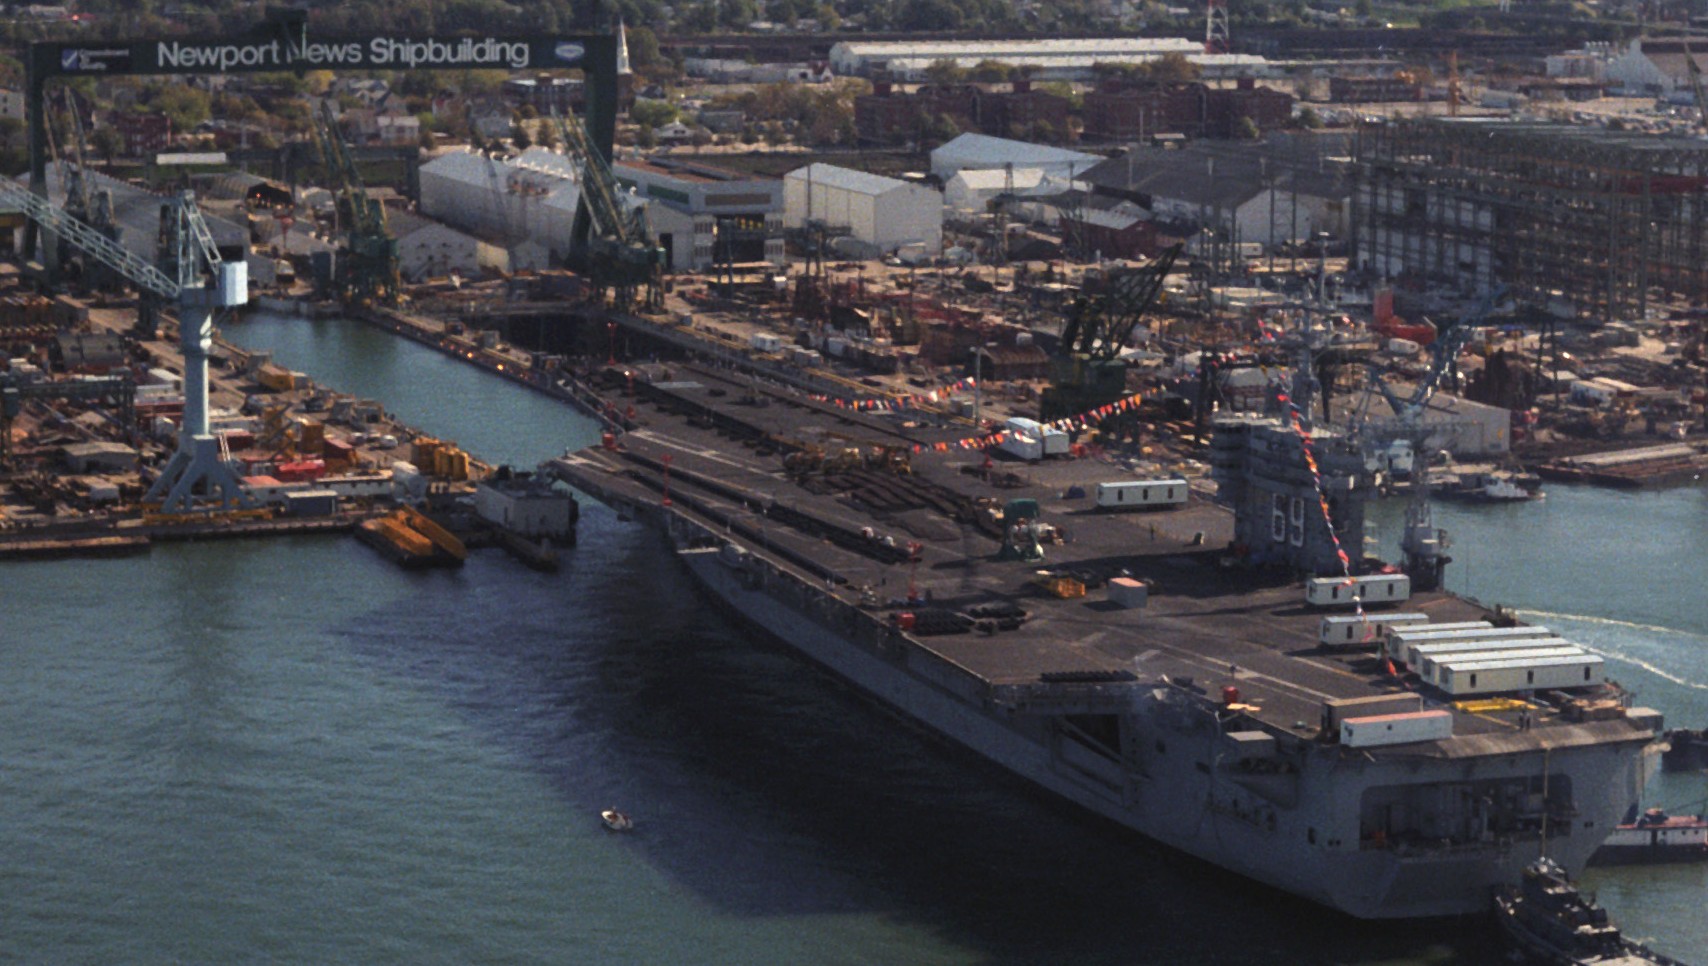 cvn-69 uss dwight d. eisenhower aircraft carrier us navy newport news shipbuilding virginia 308